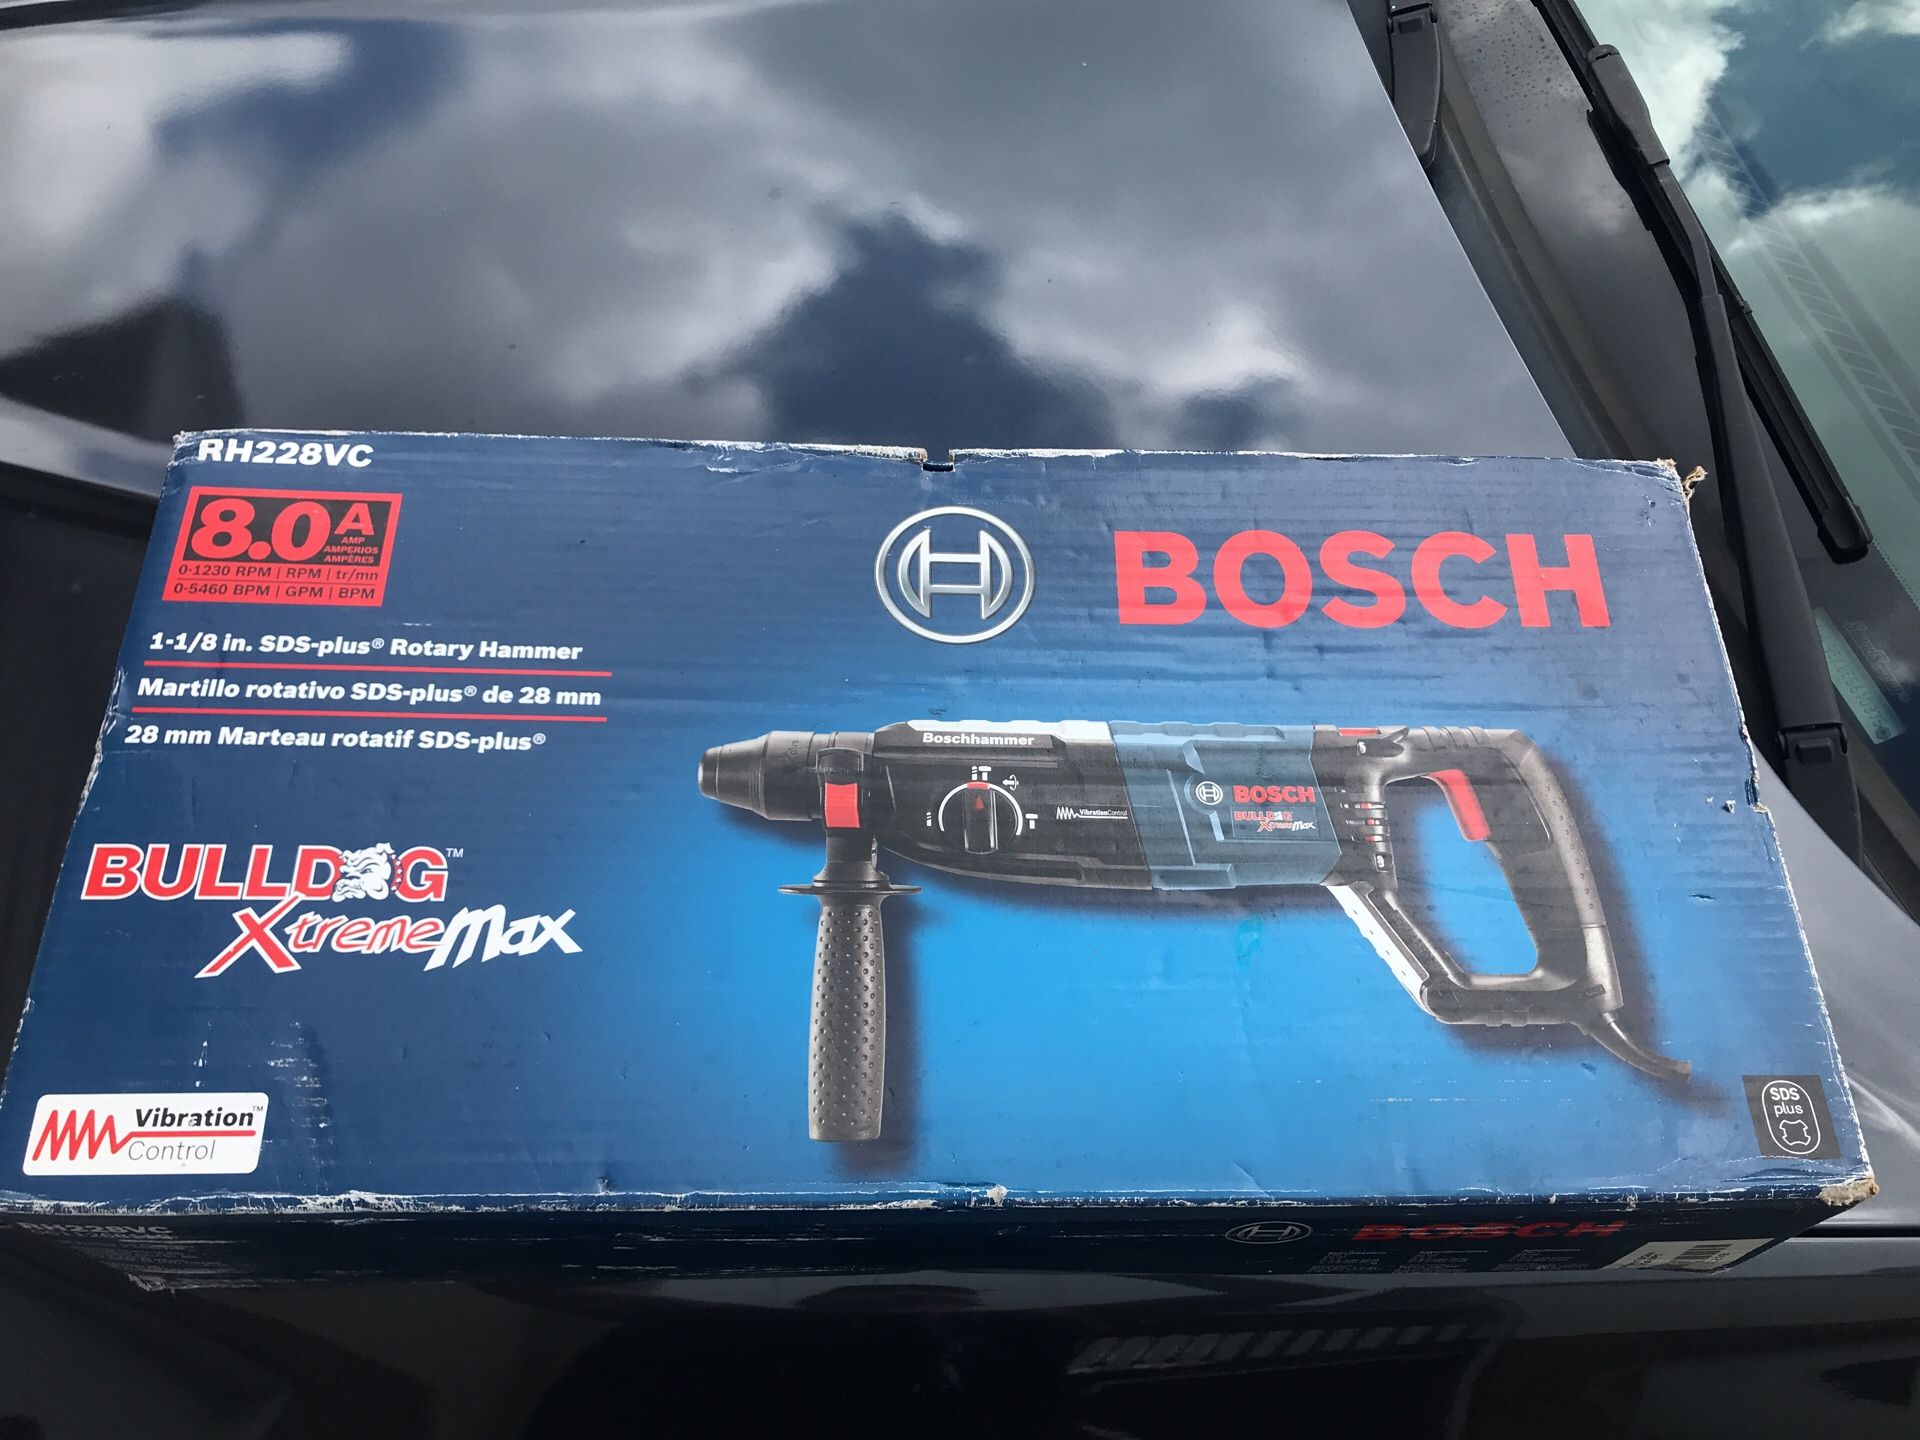 Bosch 8.0 bulldog rotary hammer